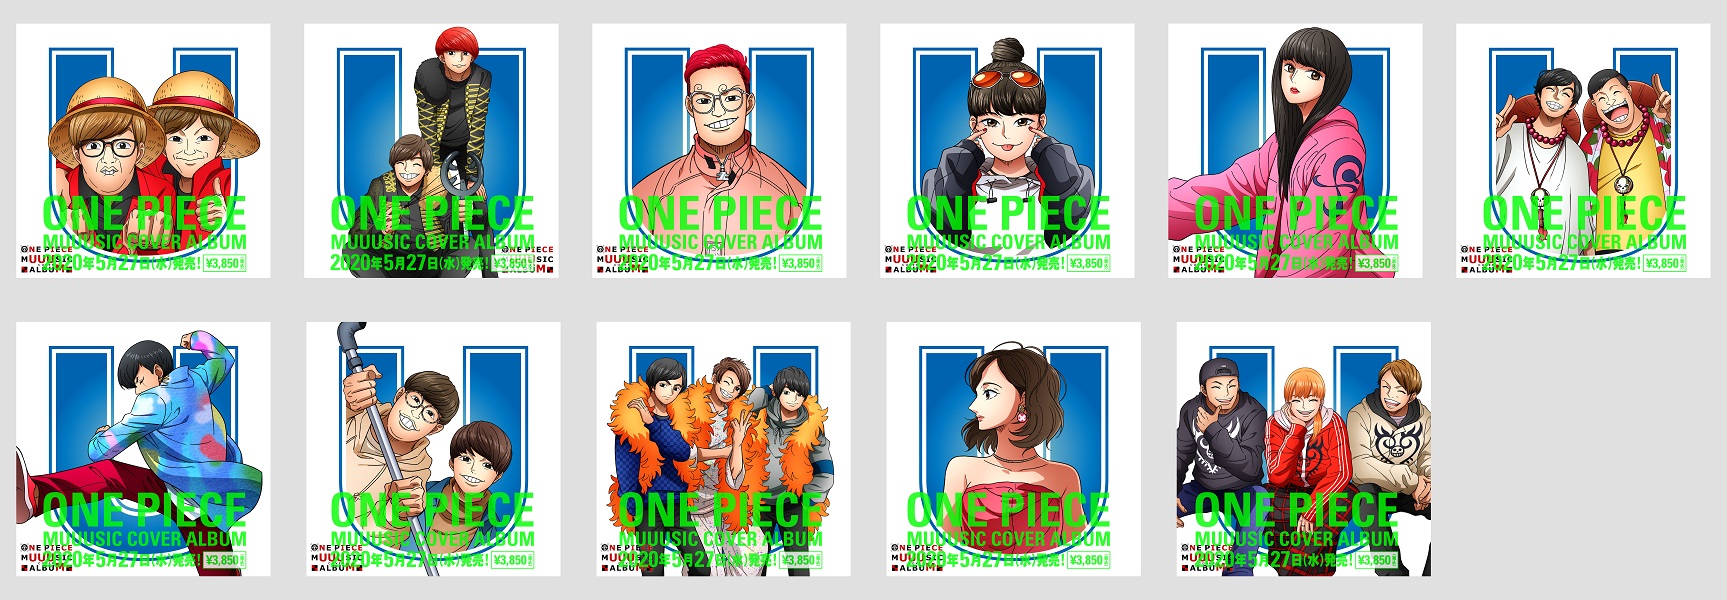 アニメ One Piece Dvd公式 Onepiece Muuusic Cover Album 5 27主題歌カバー アルバム発売 Cdに封入されるスペシャルコラボジャケットを公開 参加クリエーターをone Piece風のイラストに描き下ろし 各イラストには ワンピース キャラクターのワン